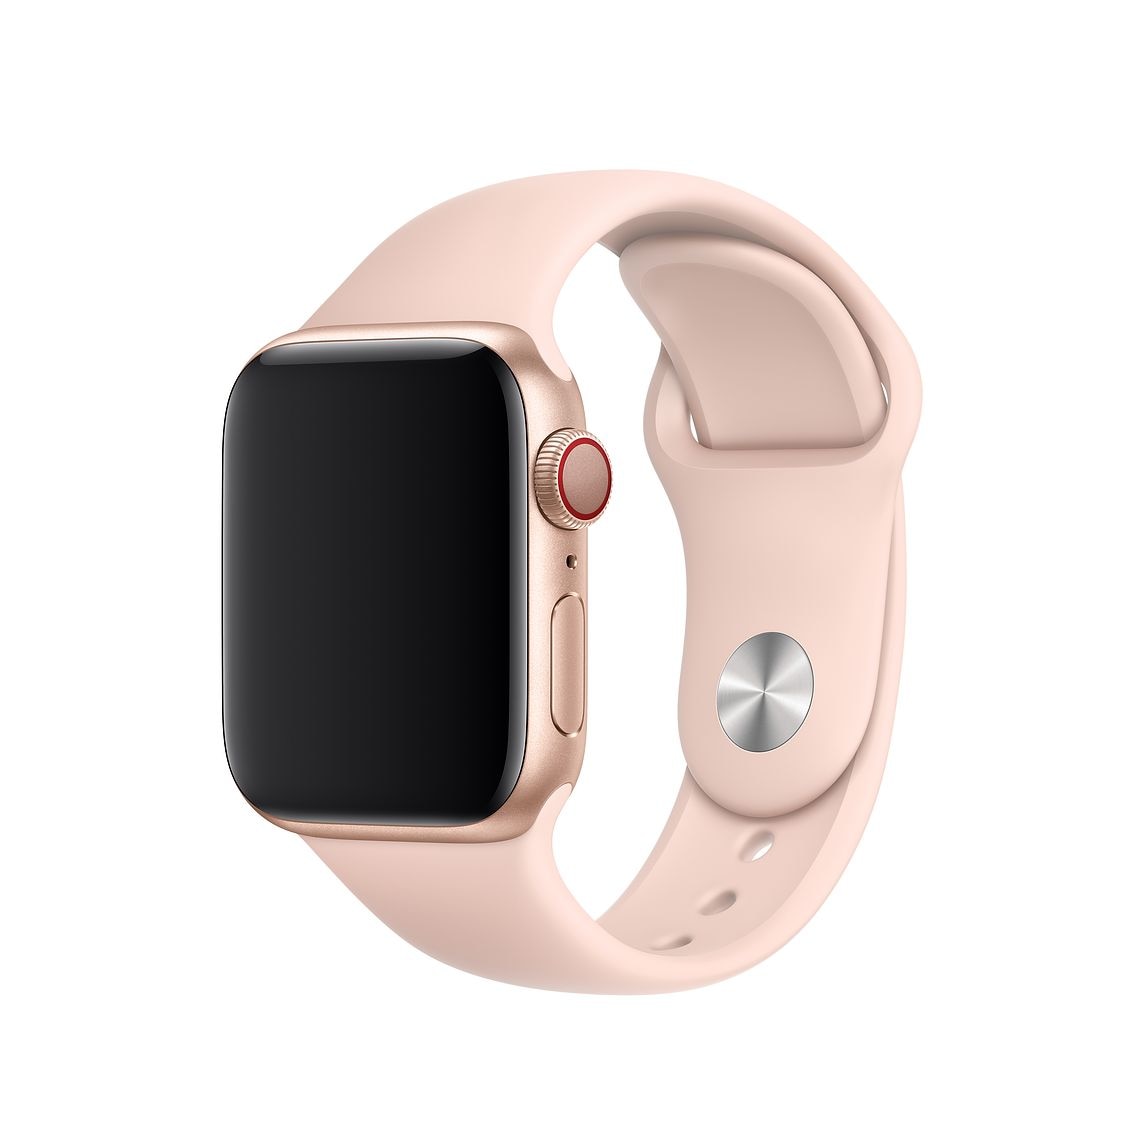 Modificări de la plictiseală Un credincios  Curea silicon pentru Apple Watch 38/40 mm, marimea S/M, seriile 1,2,3,4,5,  roz prafuit (pink sand) - eMAG.ro